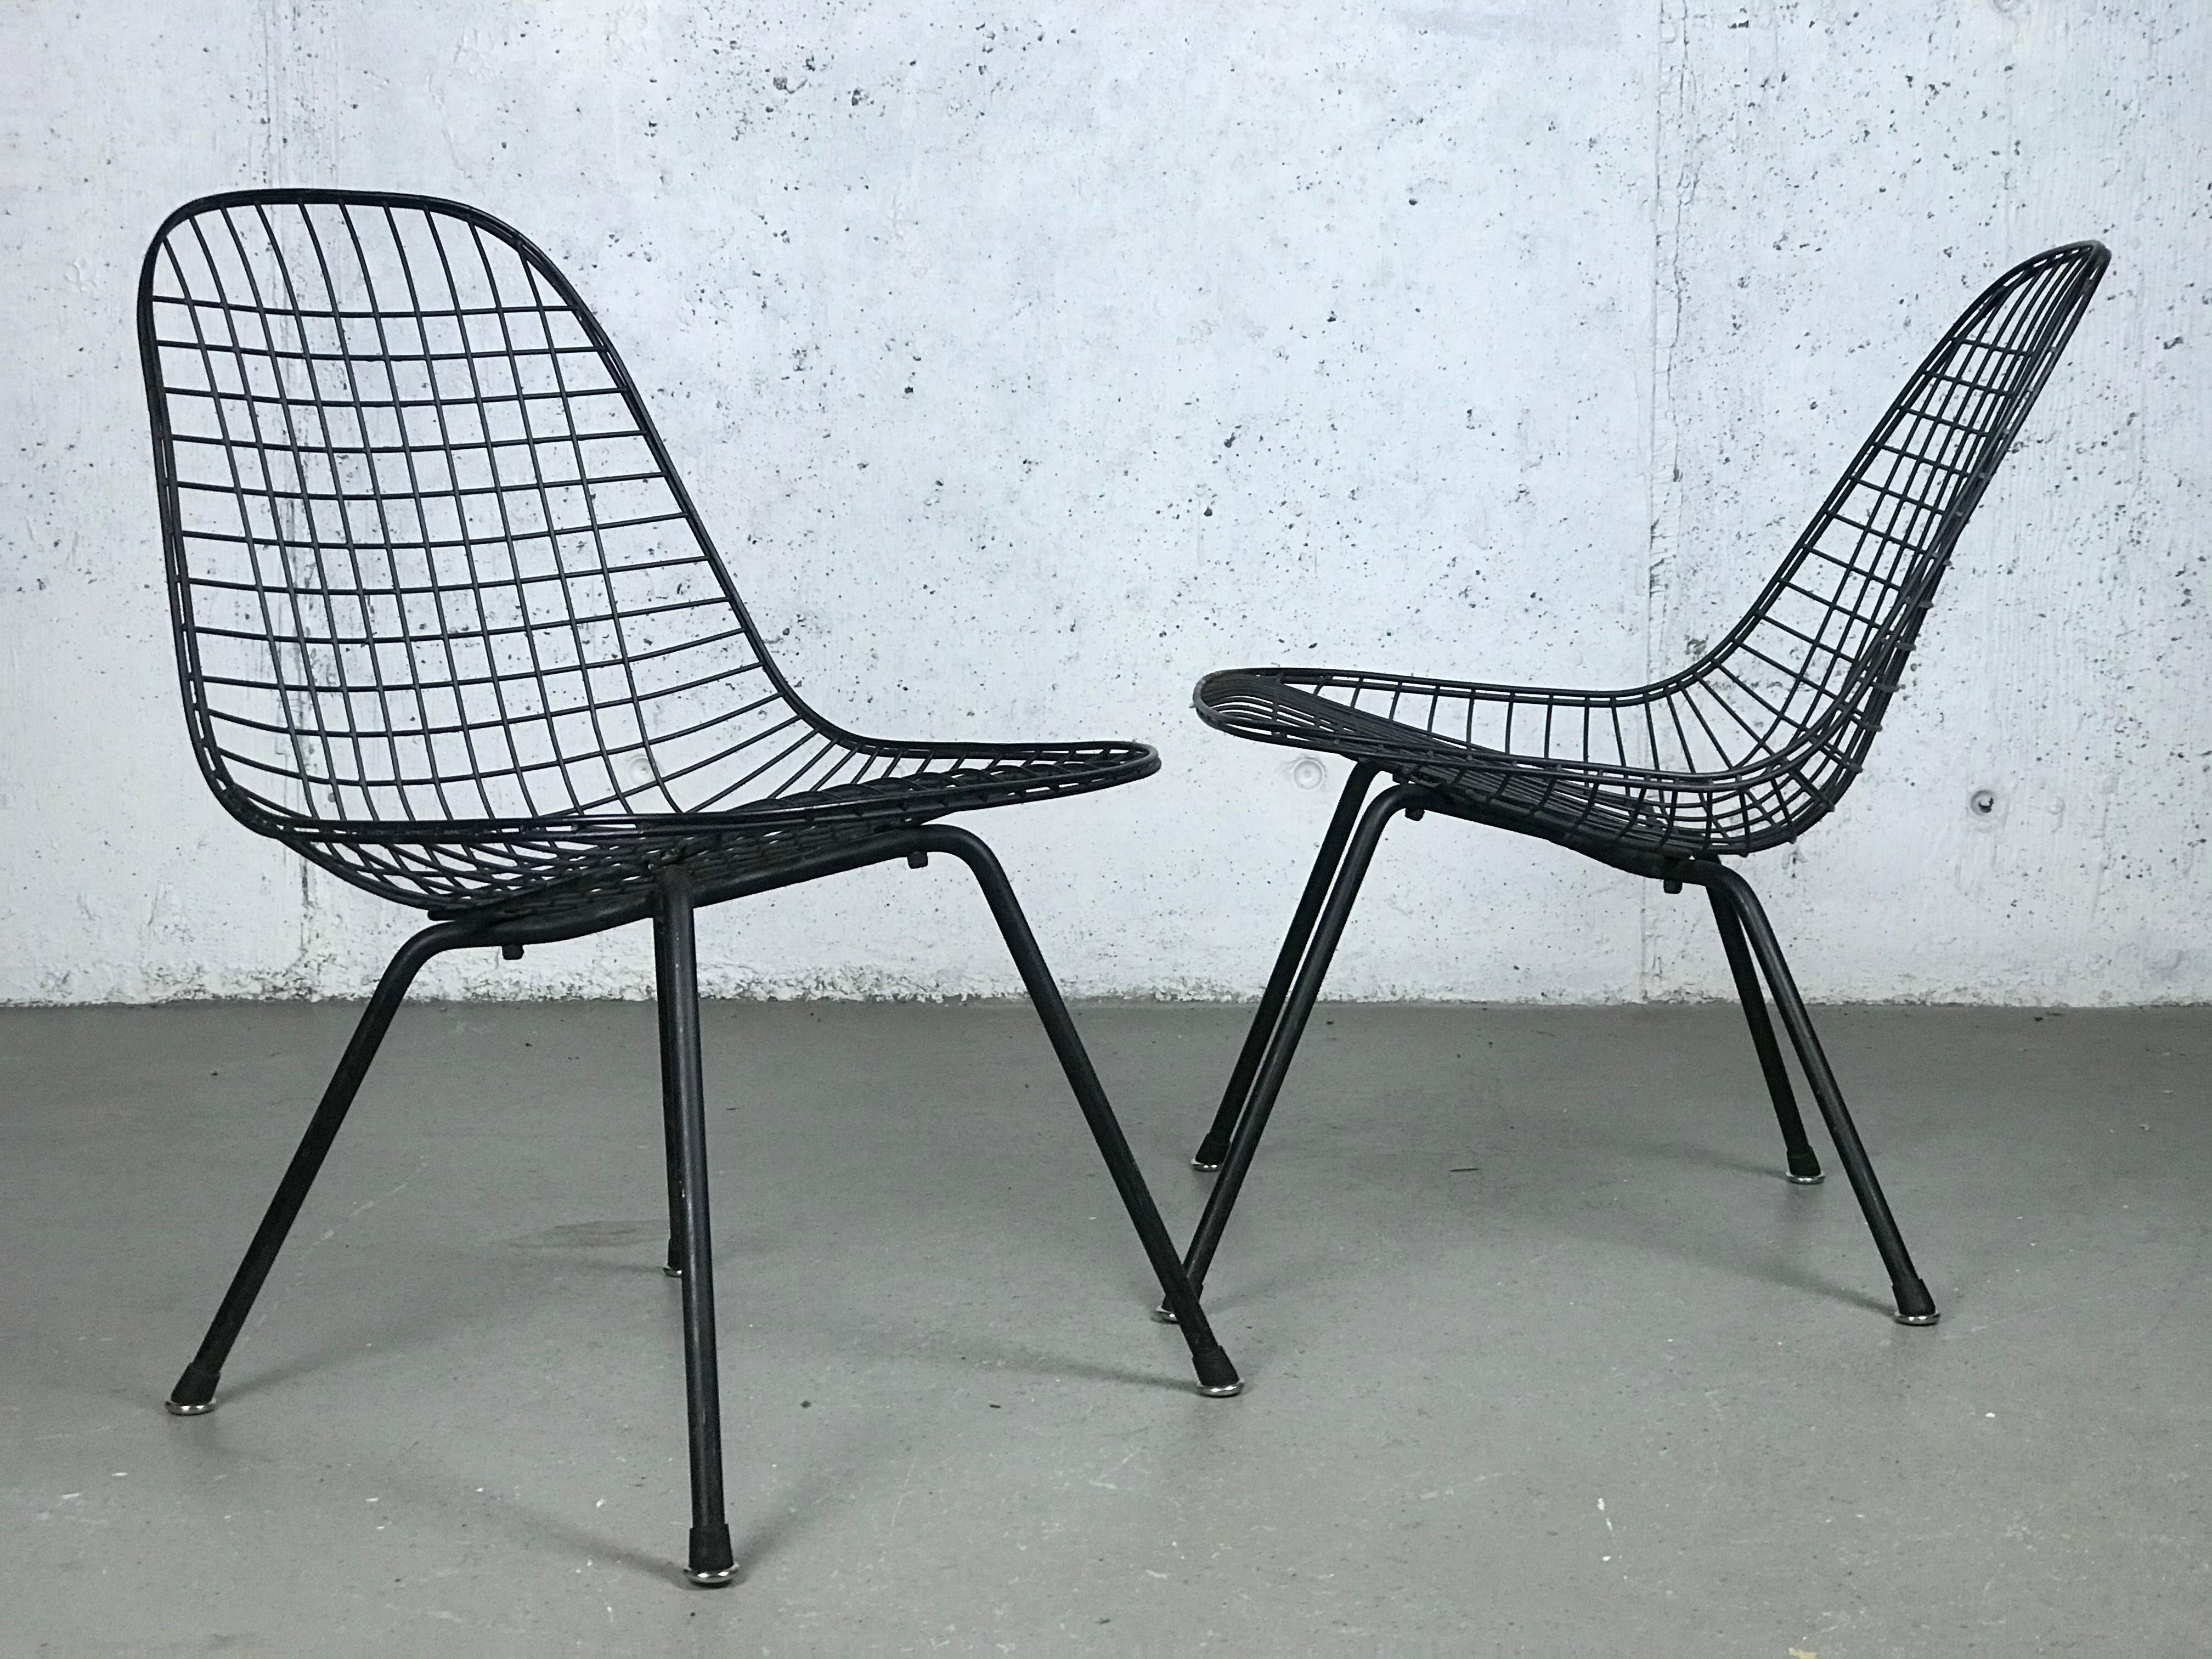 Chaises longues Eames LKX (Low/Wire/X-base) de première génération, difficiles à trouver. Cette configuration n'a été fabriquée qu'une seule année, en 1951. Fabriqué par Charles et Ray Eames pour Herman Miller. 
Variously areas of wear/oxidation,